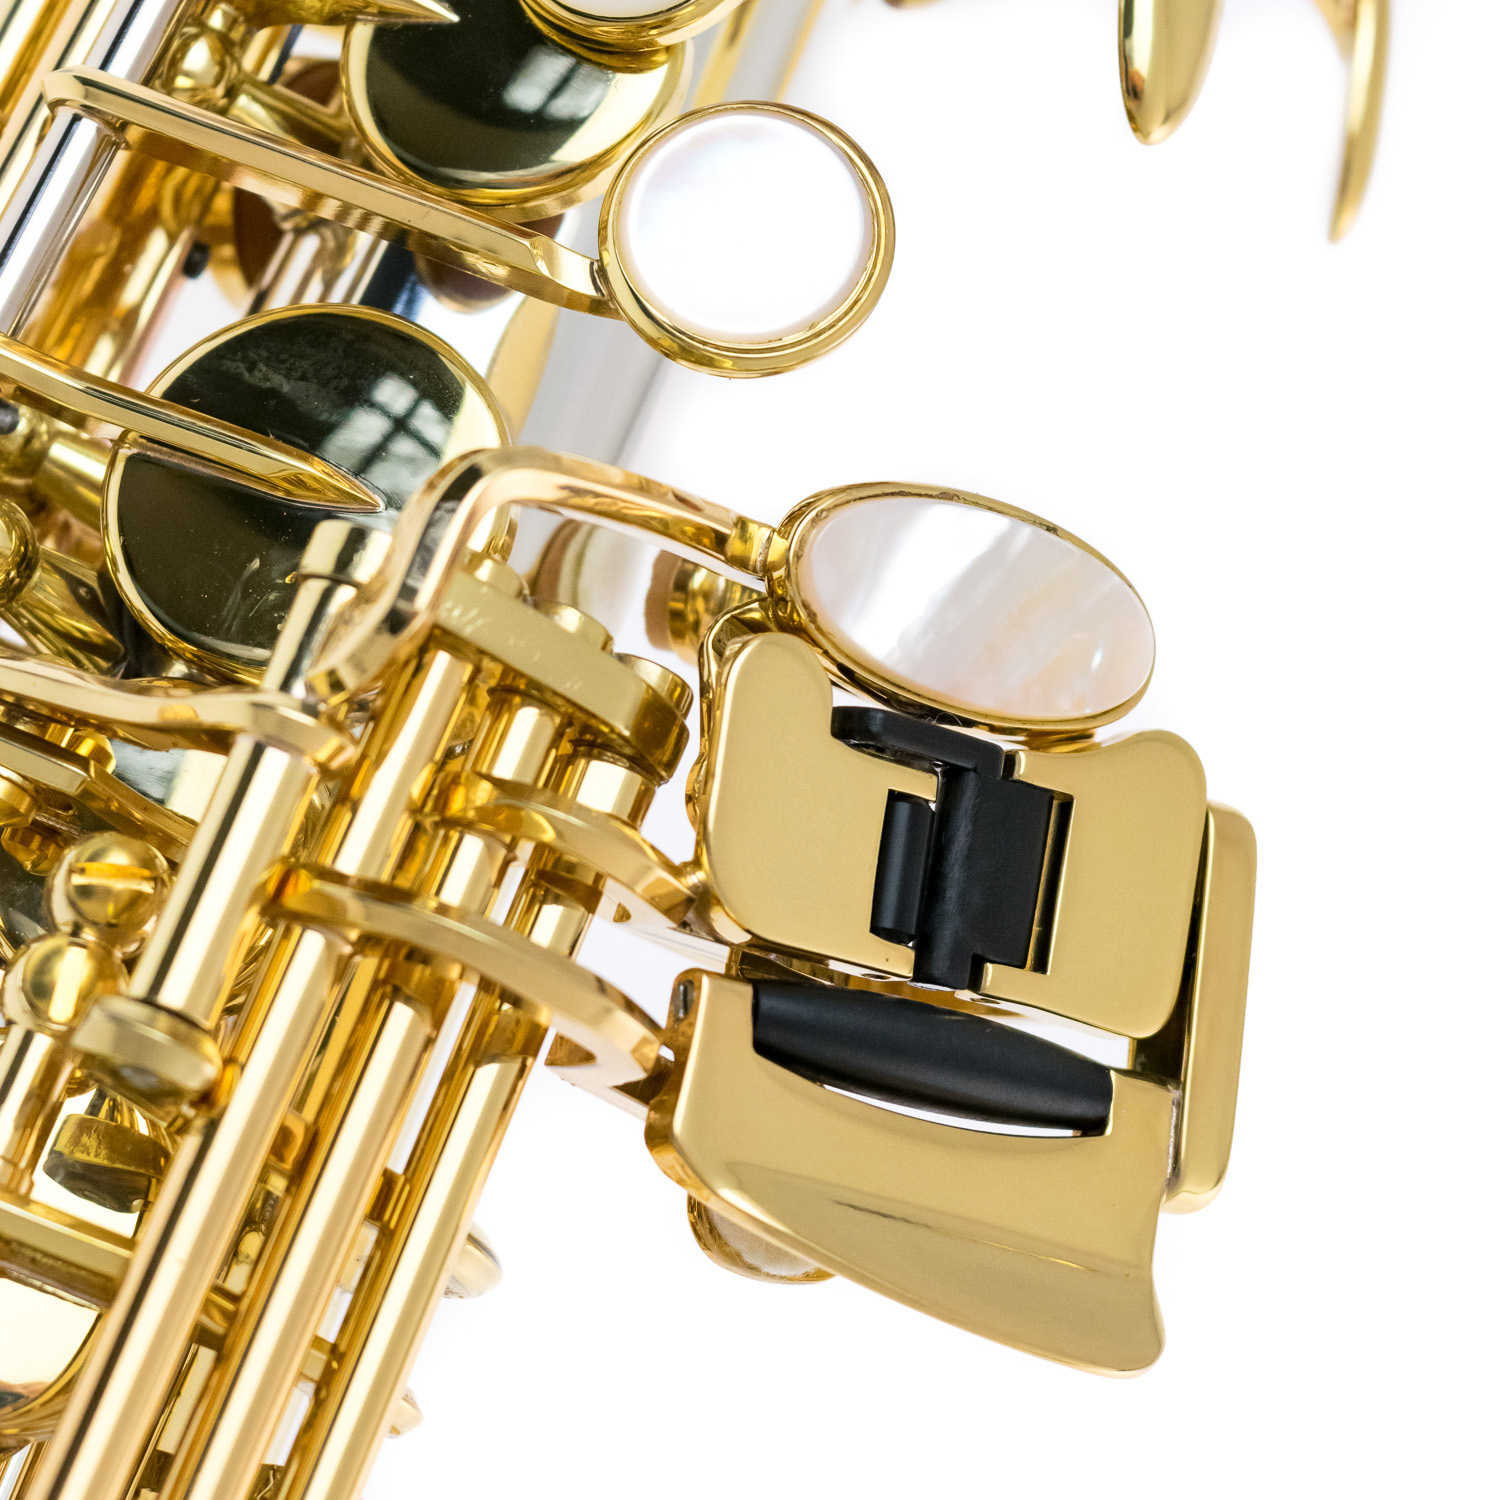 Yanagisawa Soprano Saxophone - S-WO37 Elite in Sterling Silver